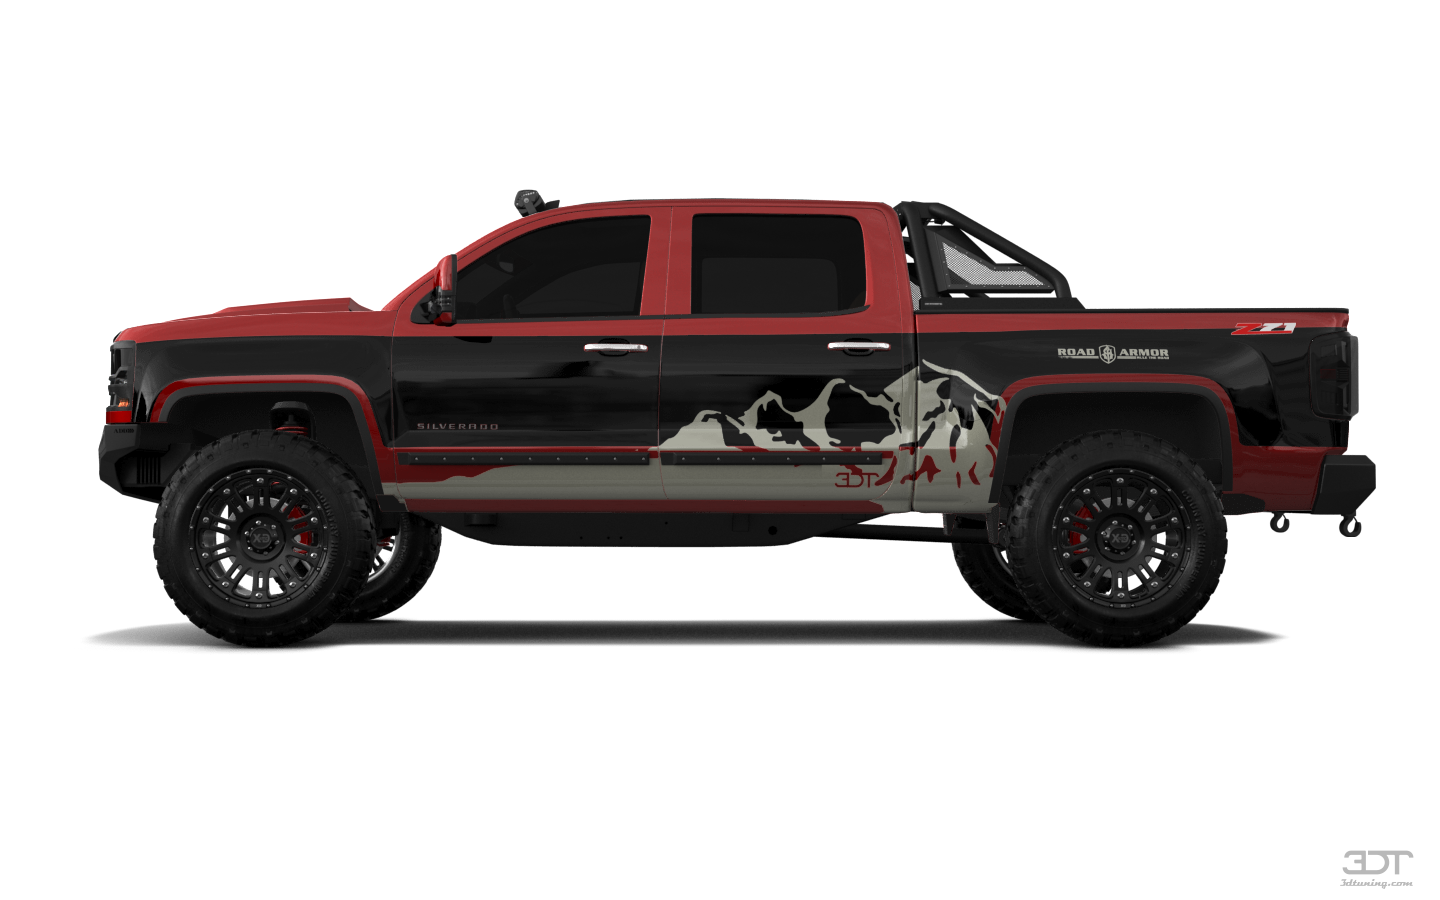 Chevrolet Silverado 1500 4 Door pickup truck 2016